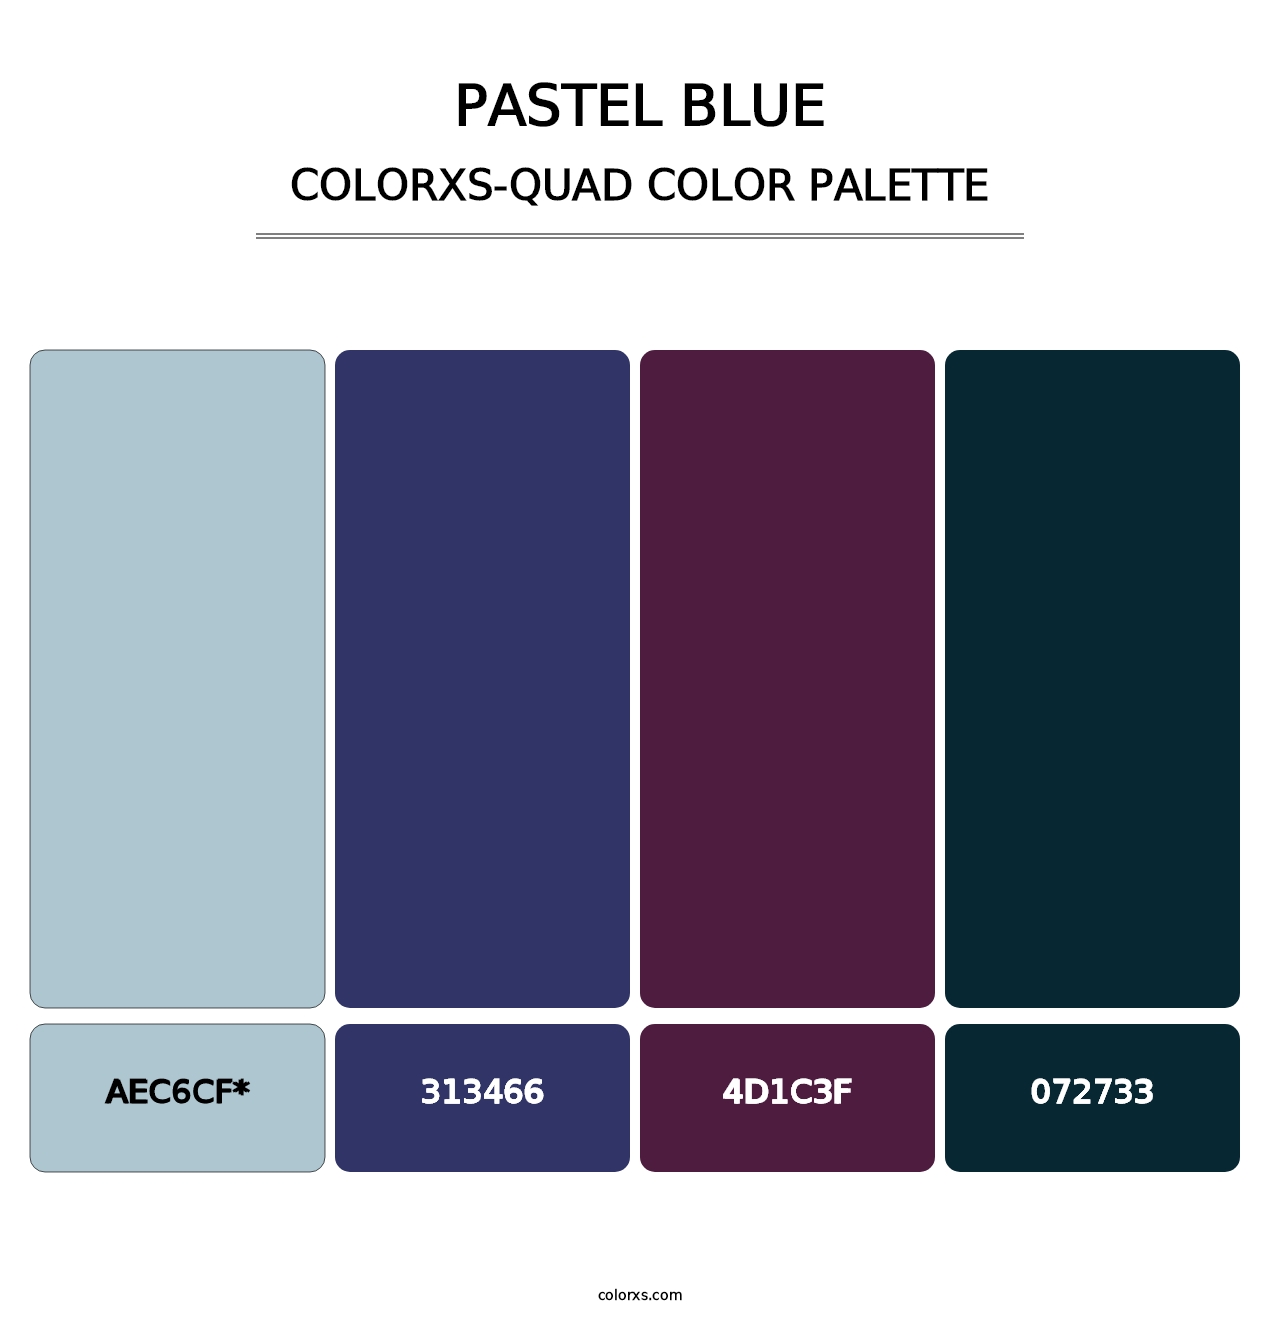 Pastel Blue - Colorxs Quad Palette